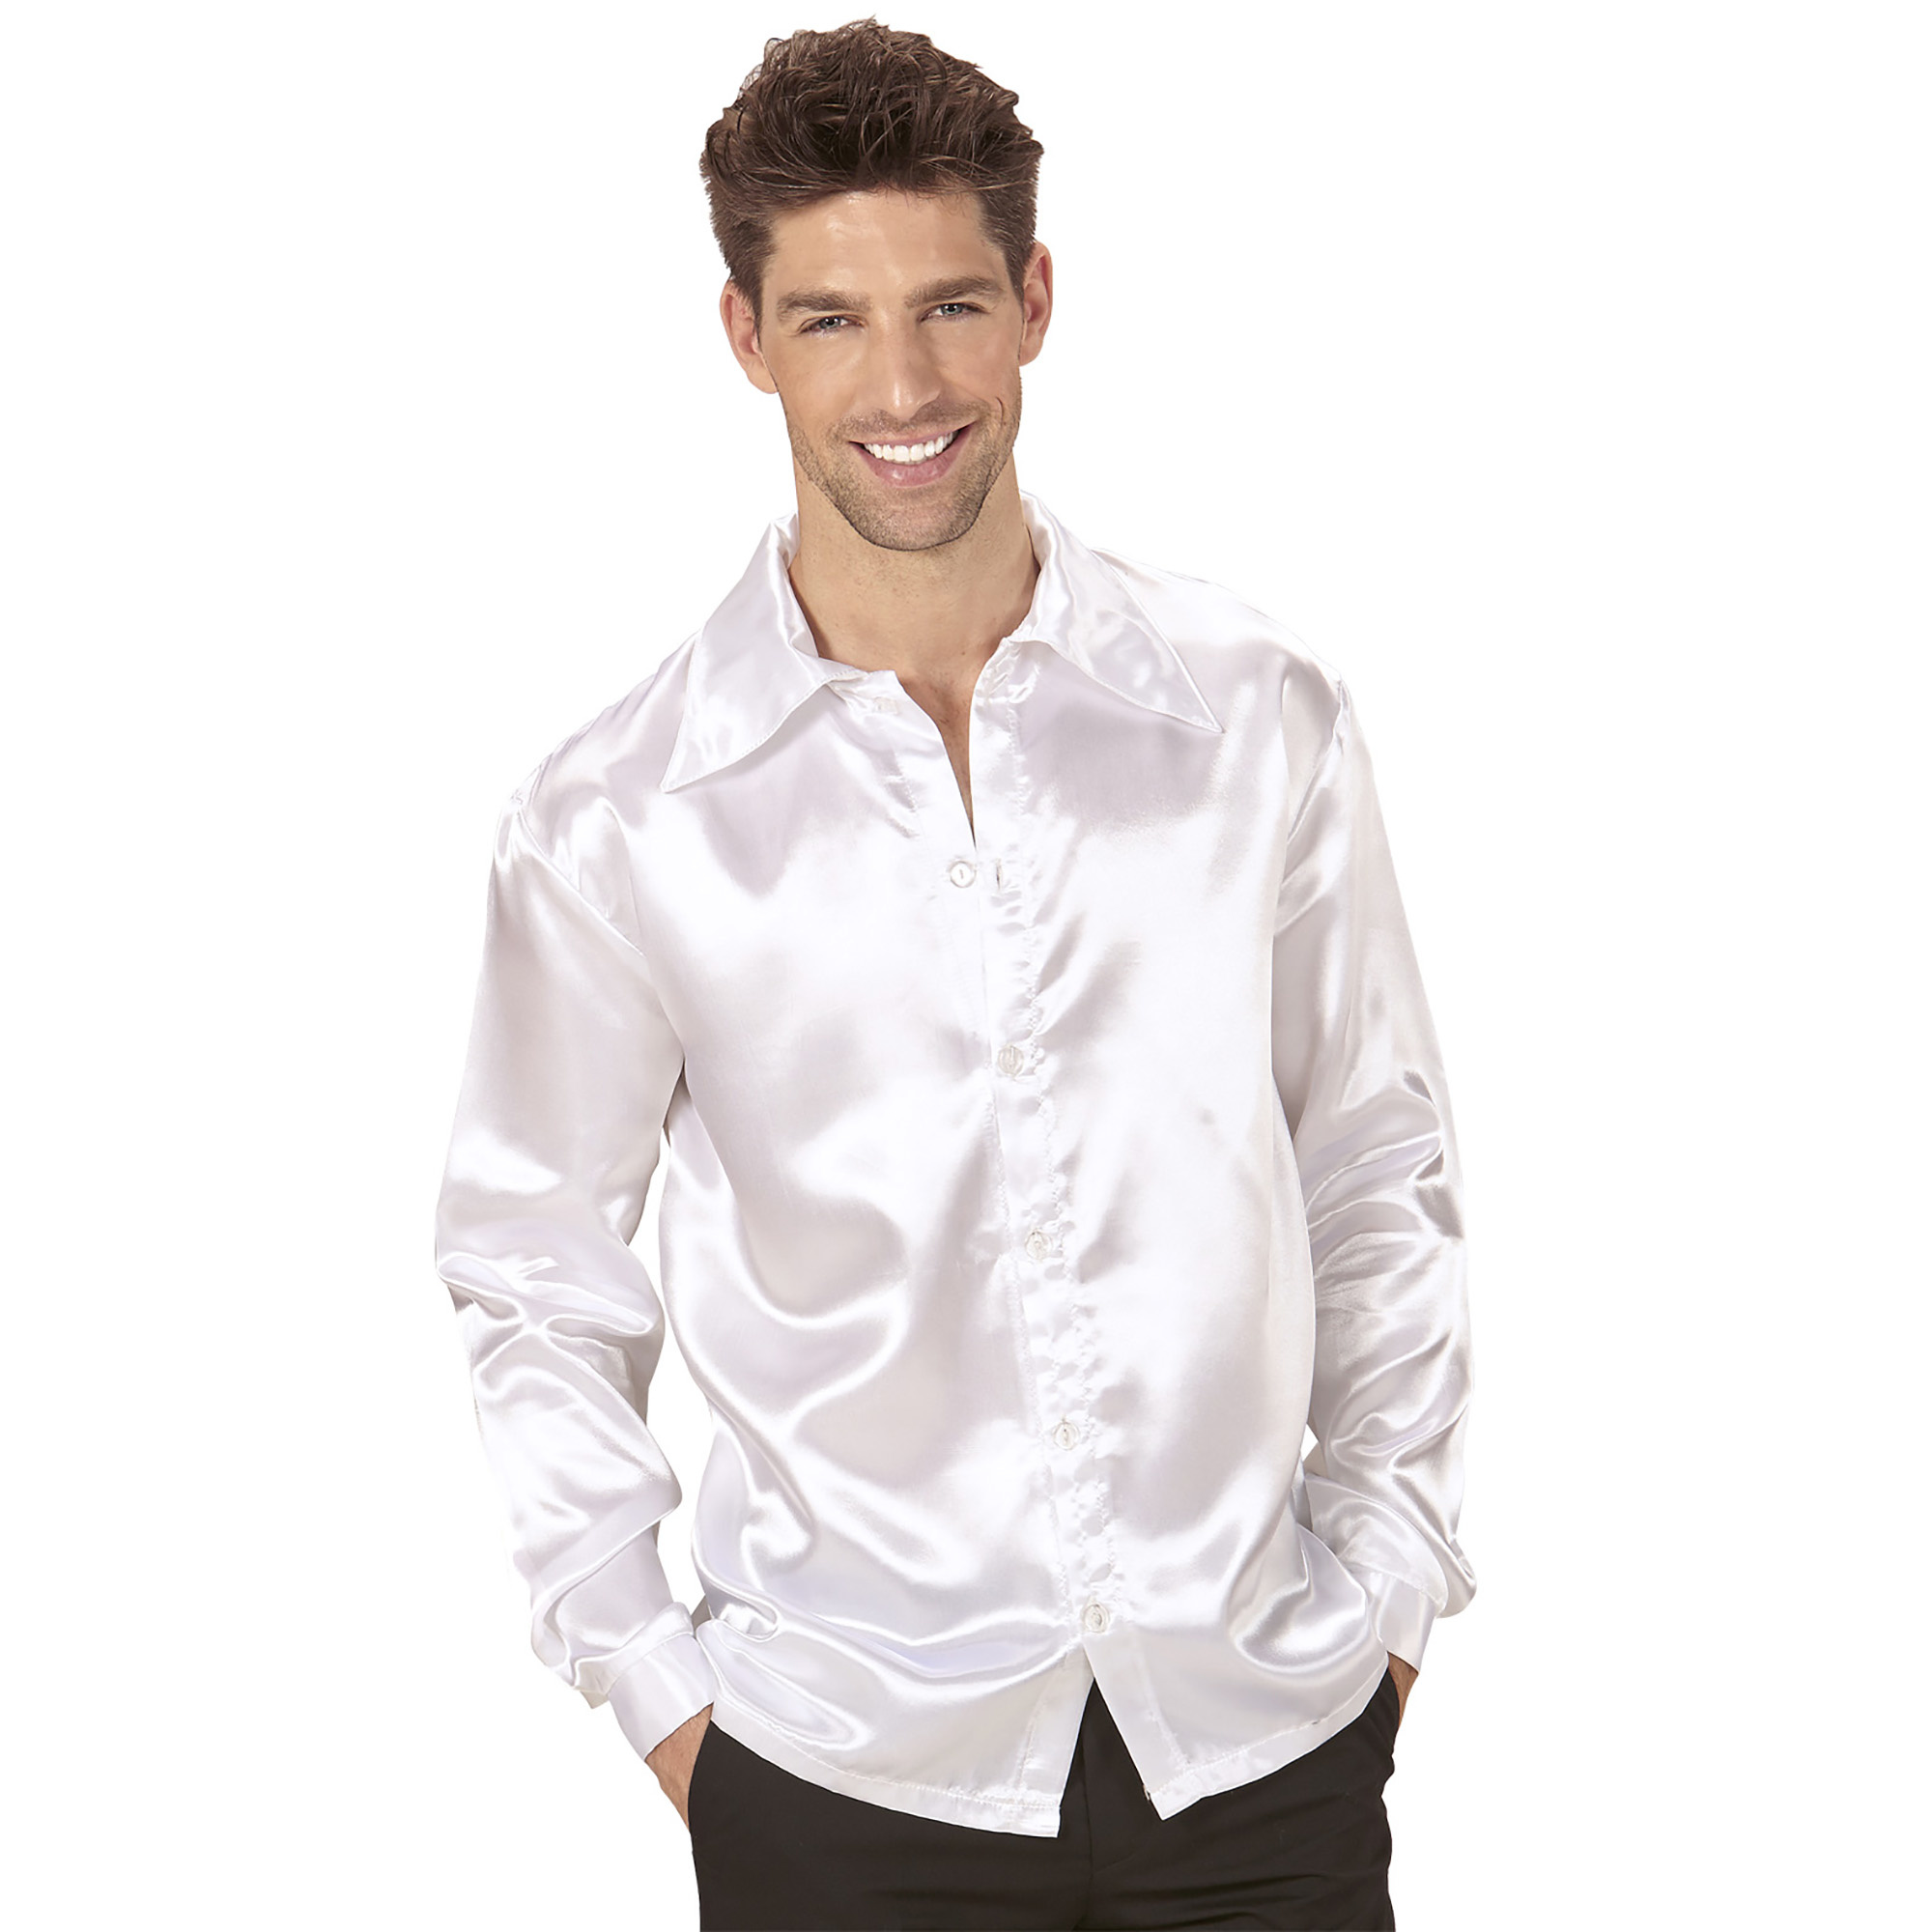 Witte satijnachtige blouse voor mannen - Volwassenen kostuums